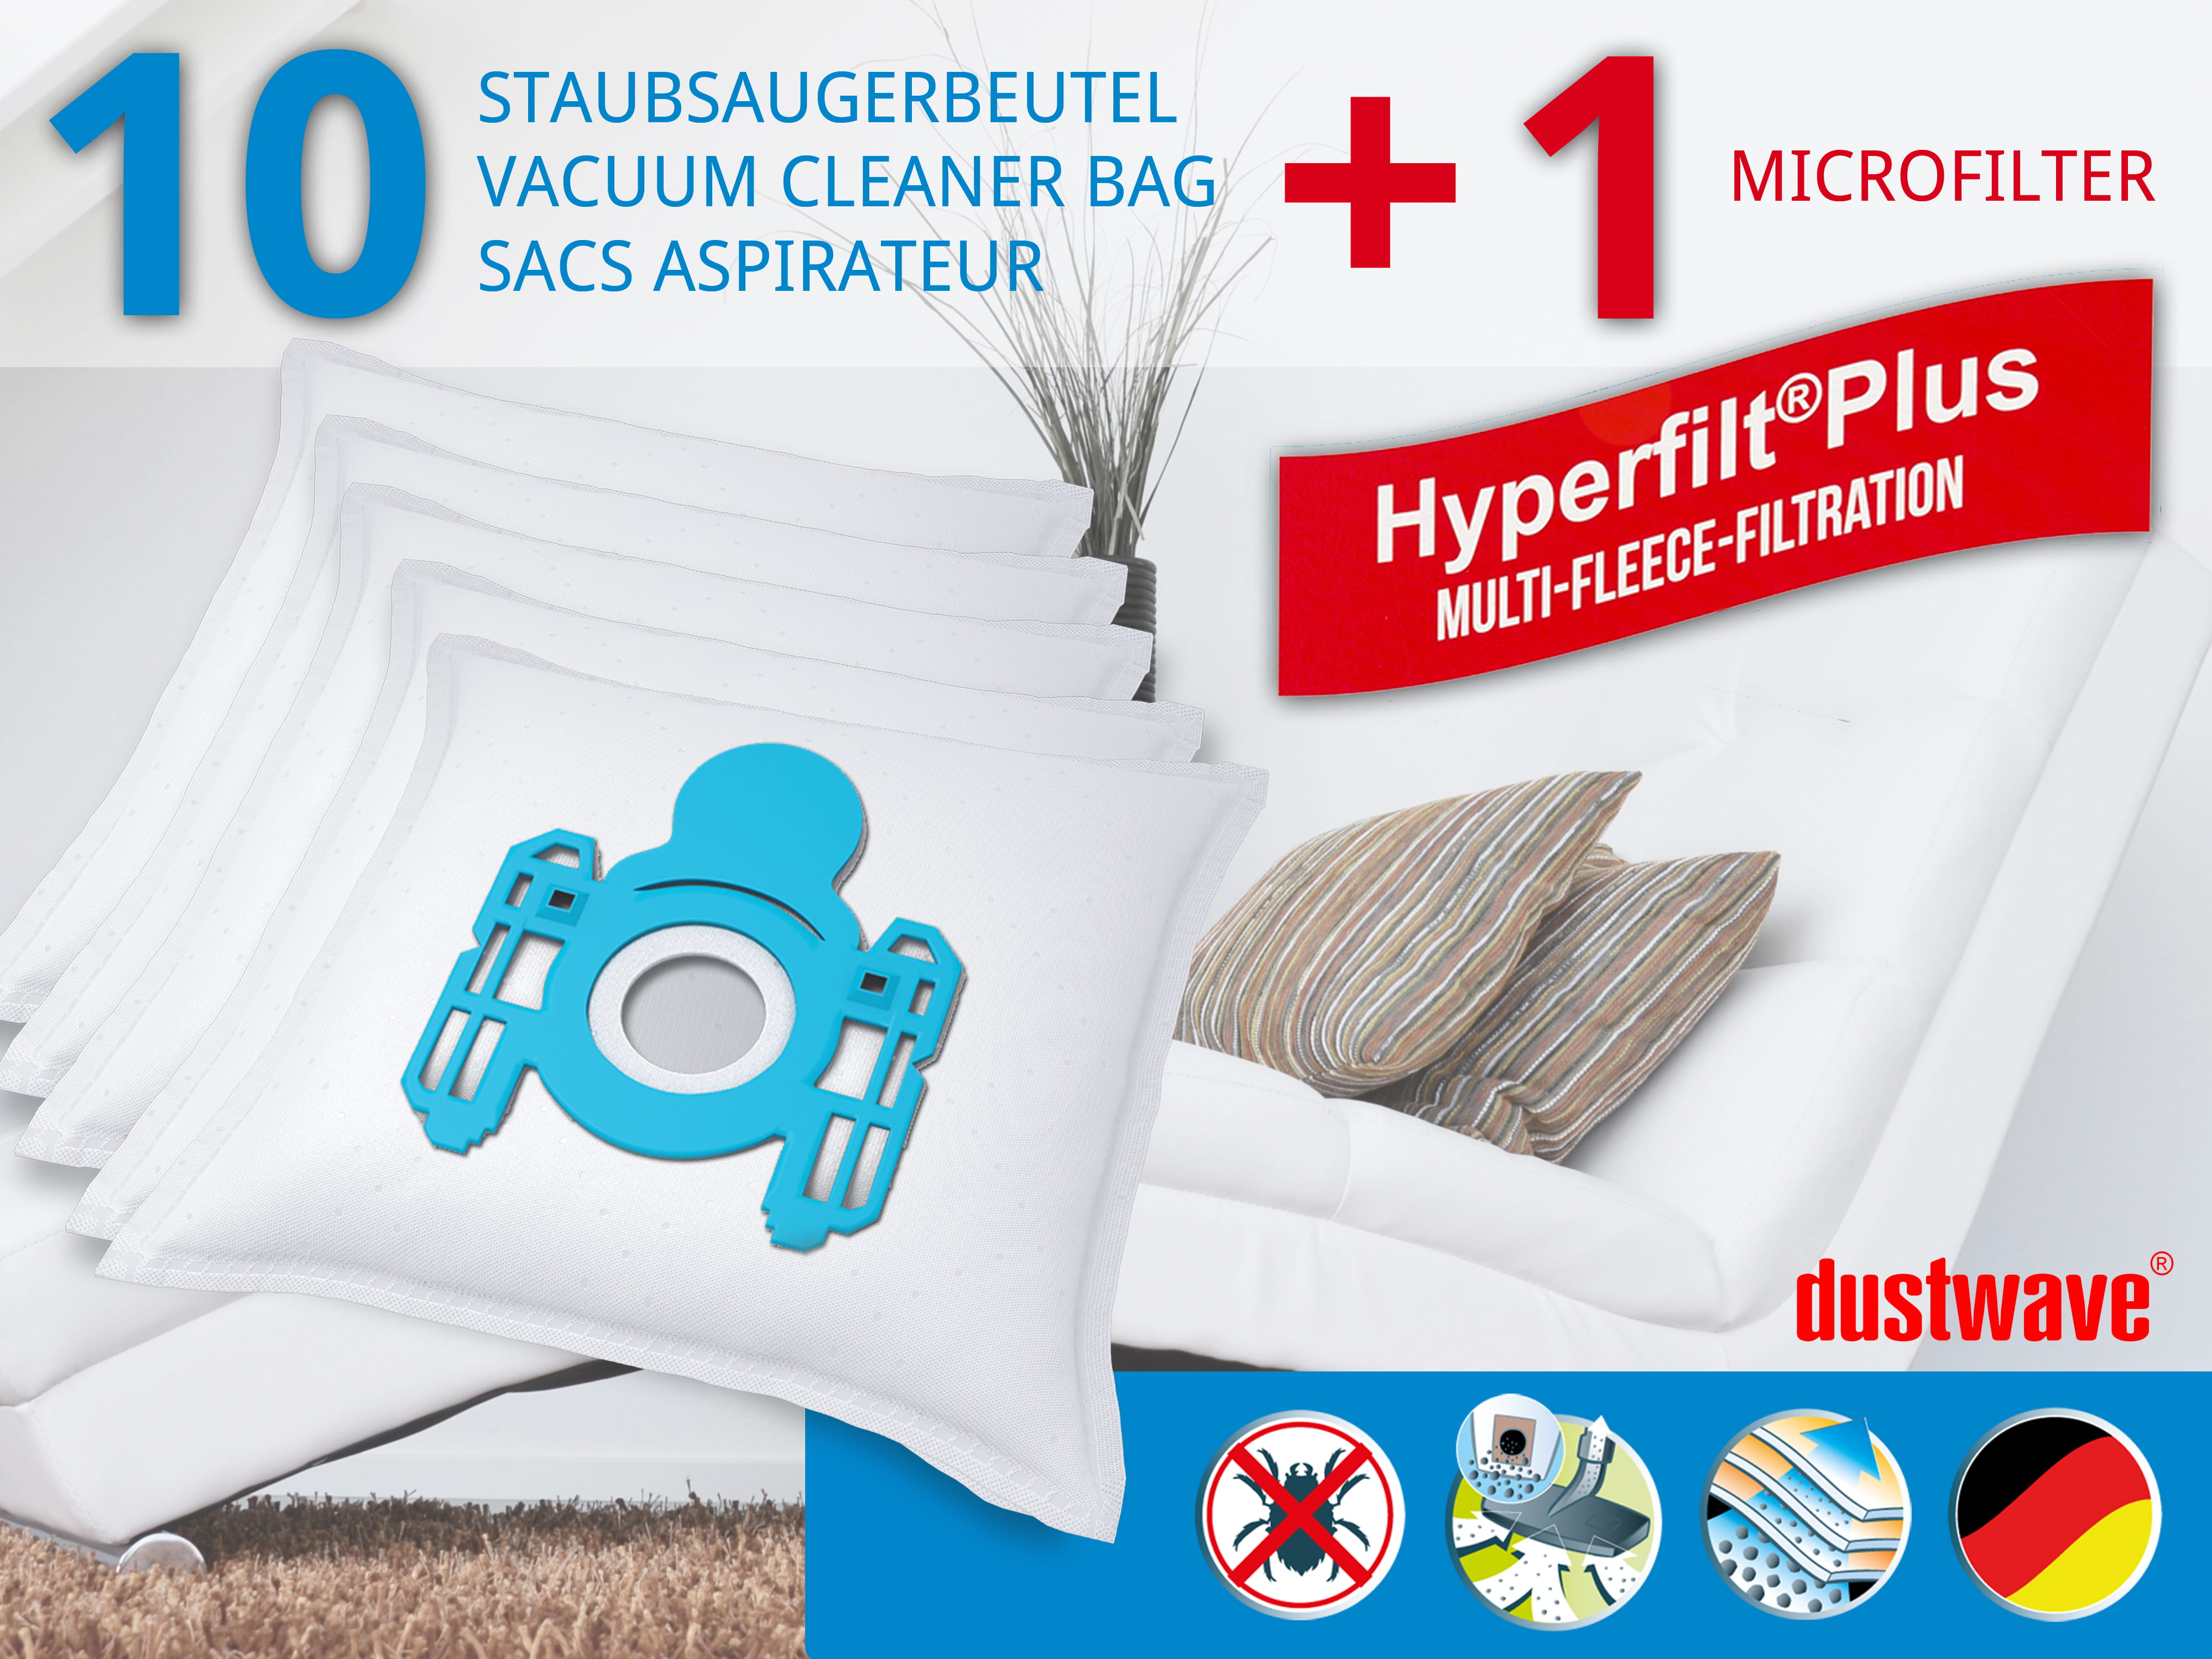 Dustwave® 10 Staubsaugerbeutel für AEG CE 1800 Comfort Vampyr - hocheffizient, mehrlagiges Mikrovlies mit Hygieneverschluss - Made in Germany